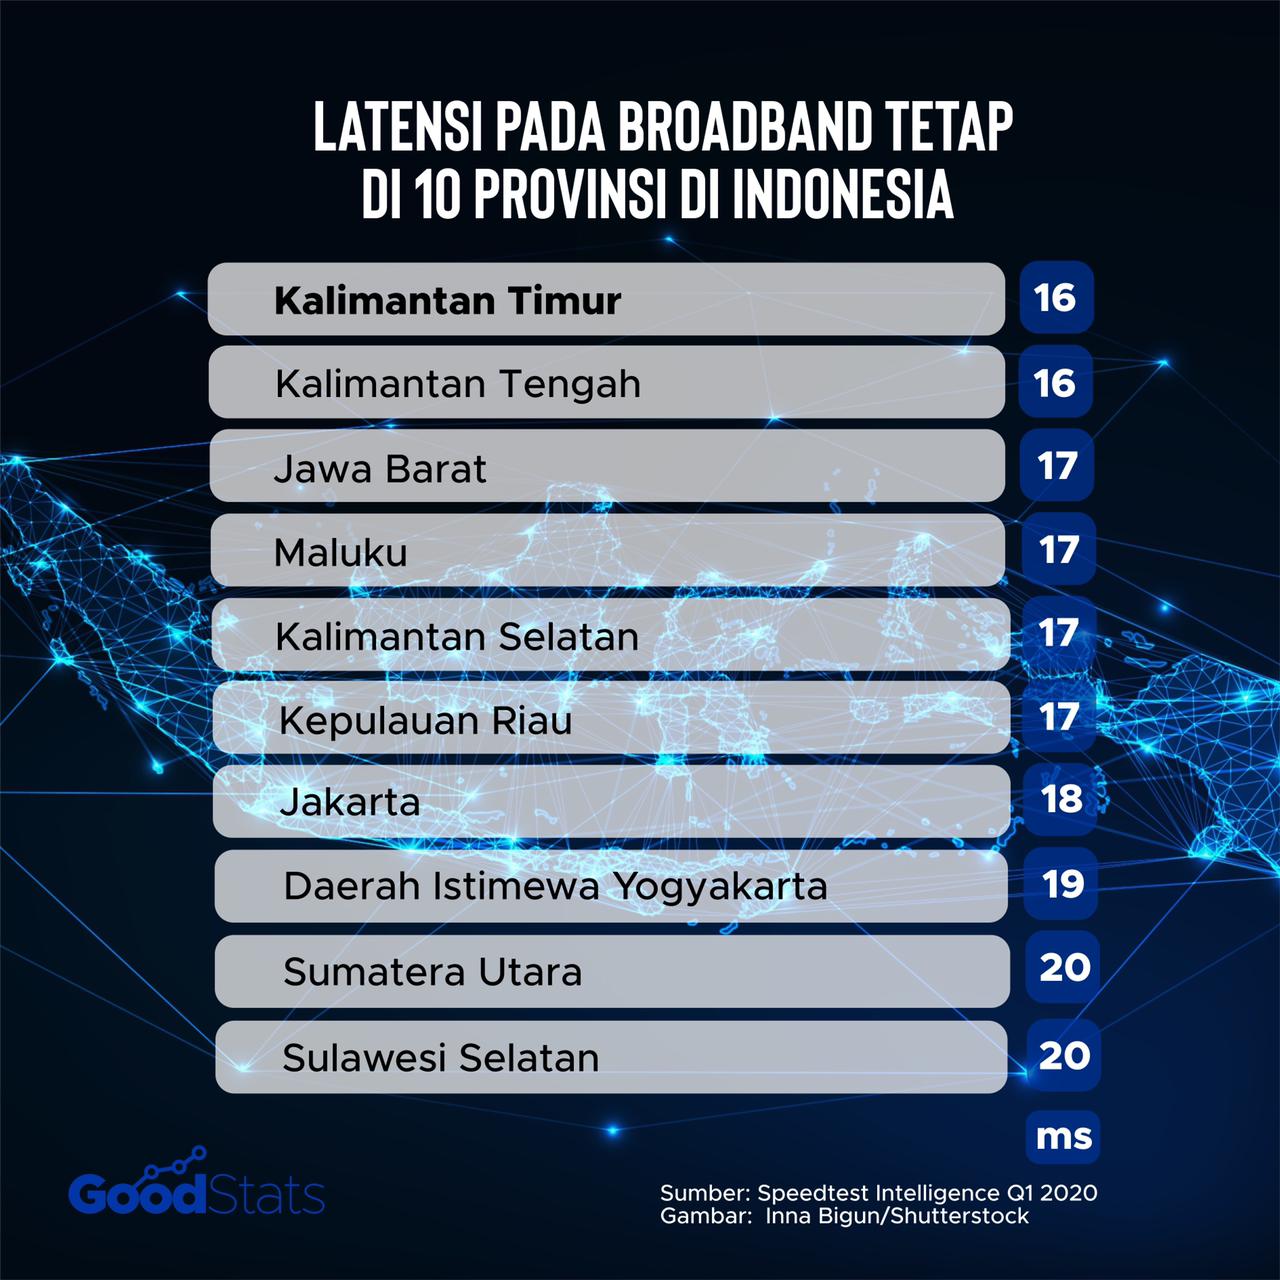 10 provinsi pemilik latensi fixed broadband terendah. Kalimatan Timur dan Kalimantan Tengah menjadi provinsi dengan angka latensi terendah, yakni 16 ms | GoodStats